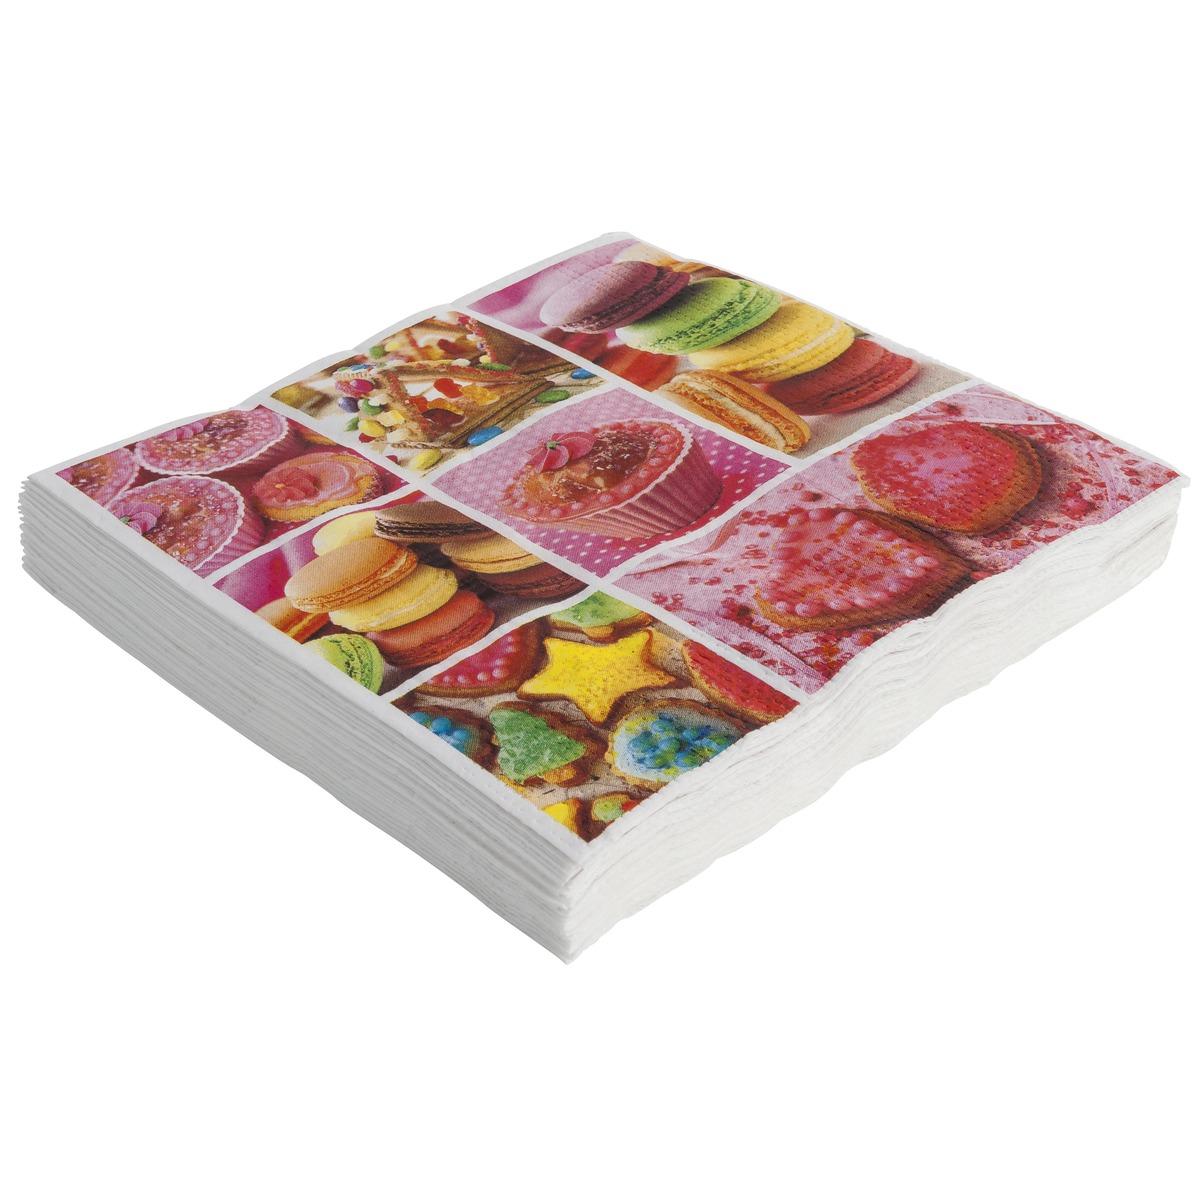 Lot de 20 serviettes en papier collection Cupcake - 33 x 33 cm - Modèle Desserts